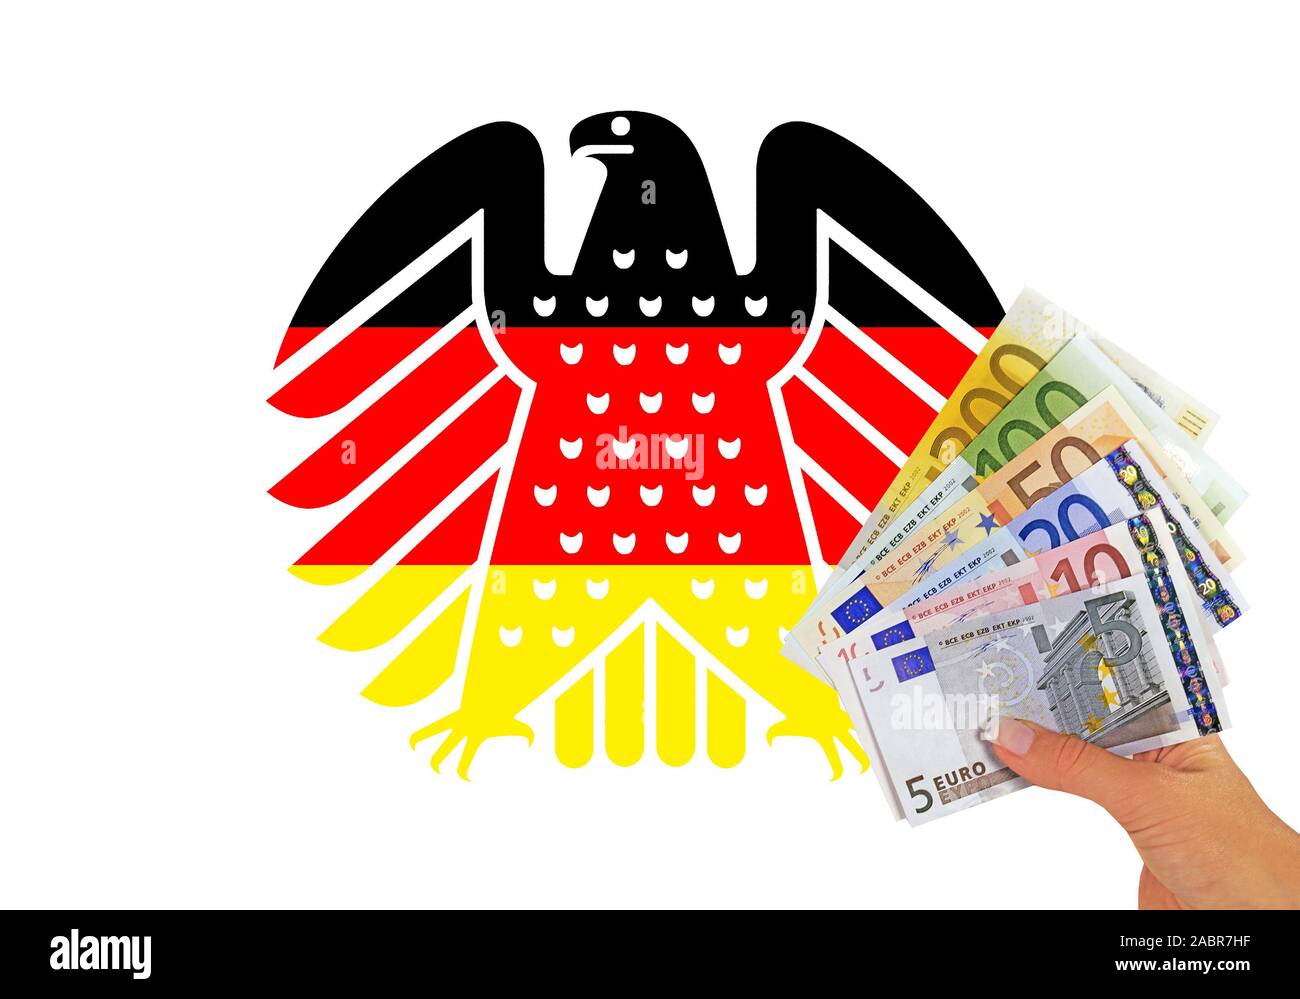 Neuer Bundesadler in den Farben schwarz-rot-gold, Wappentier der Bundesrepublik Deutschland, davor mit la main, Banknoten Banque D'Images